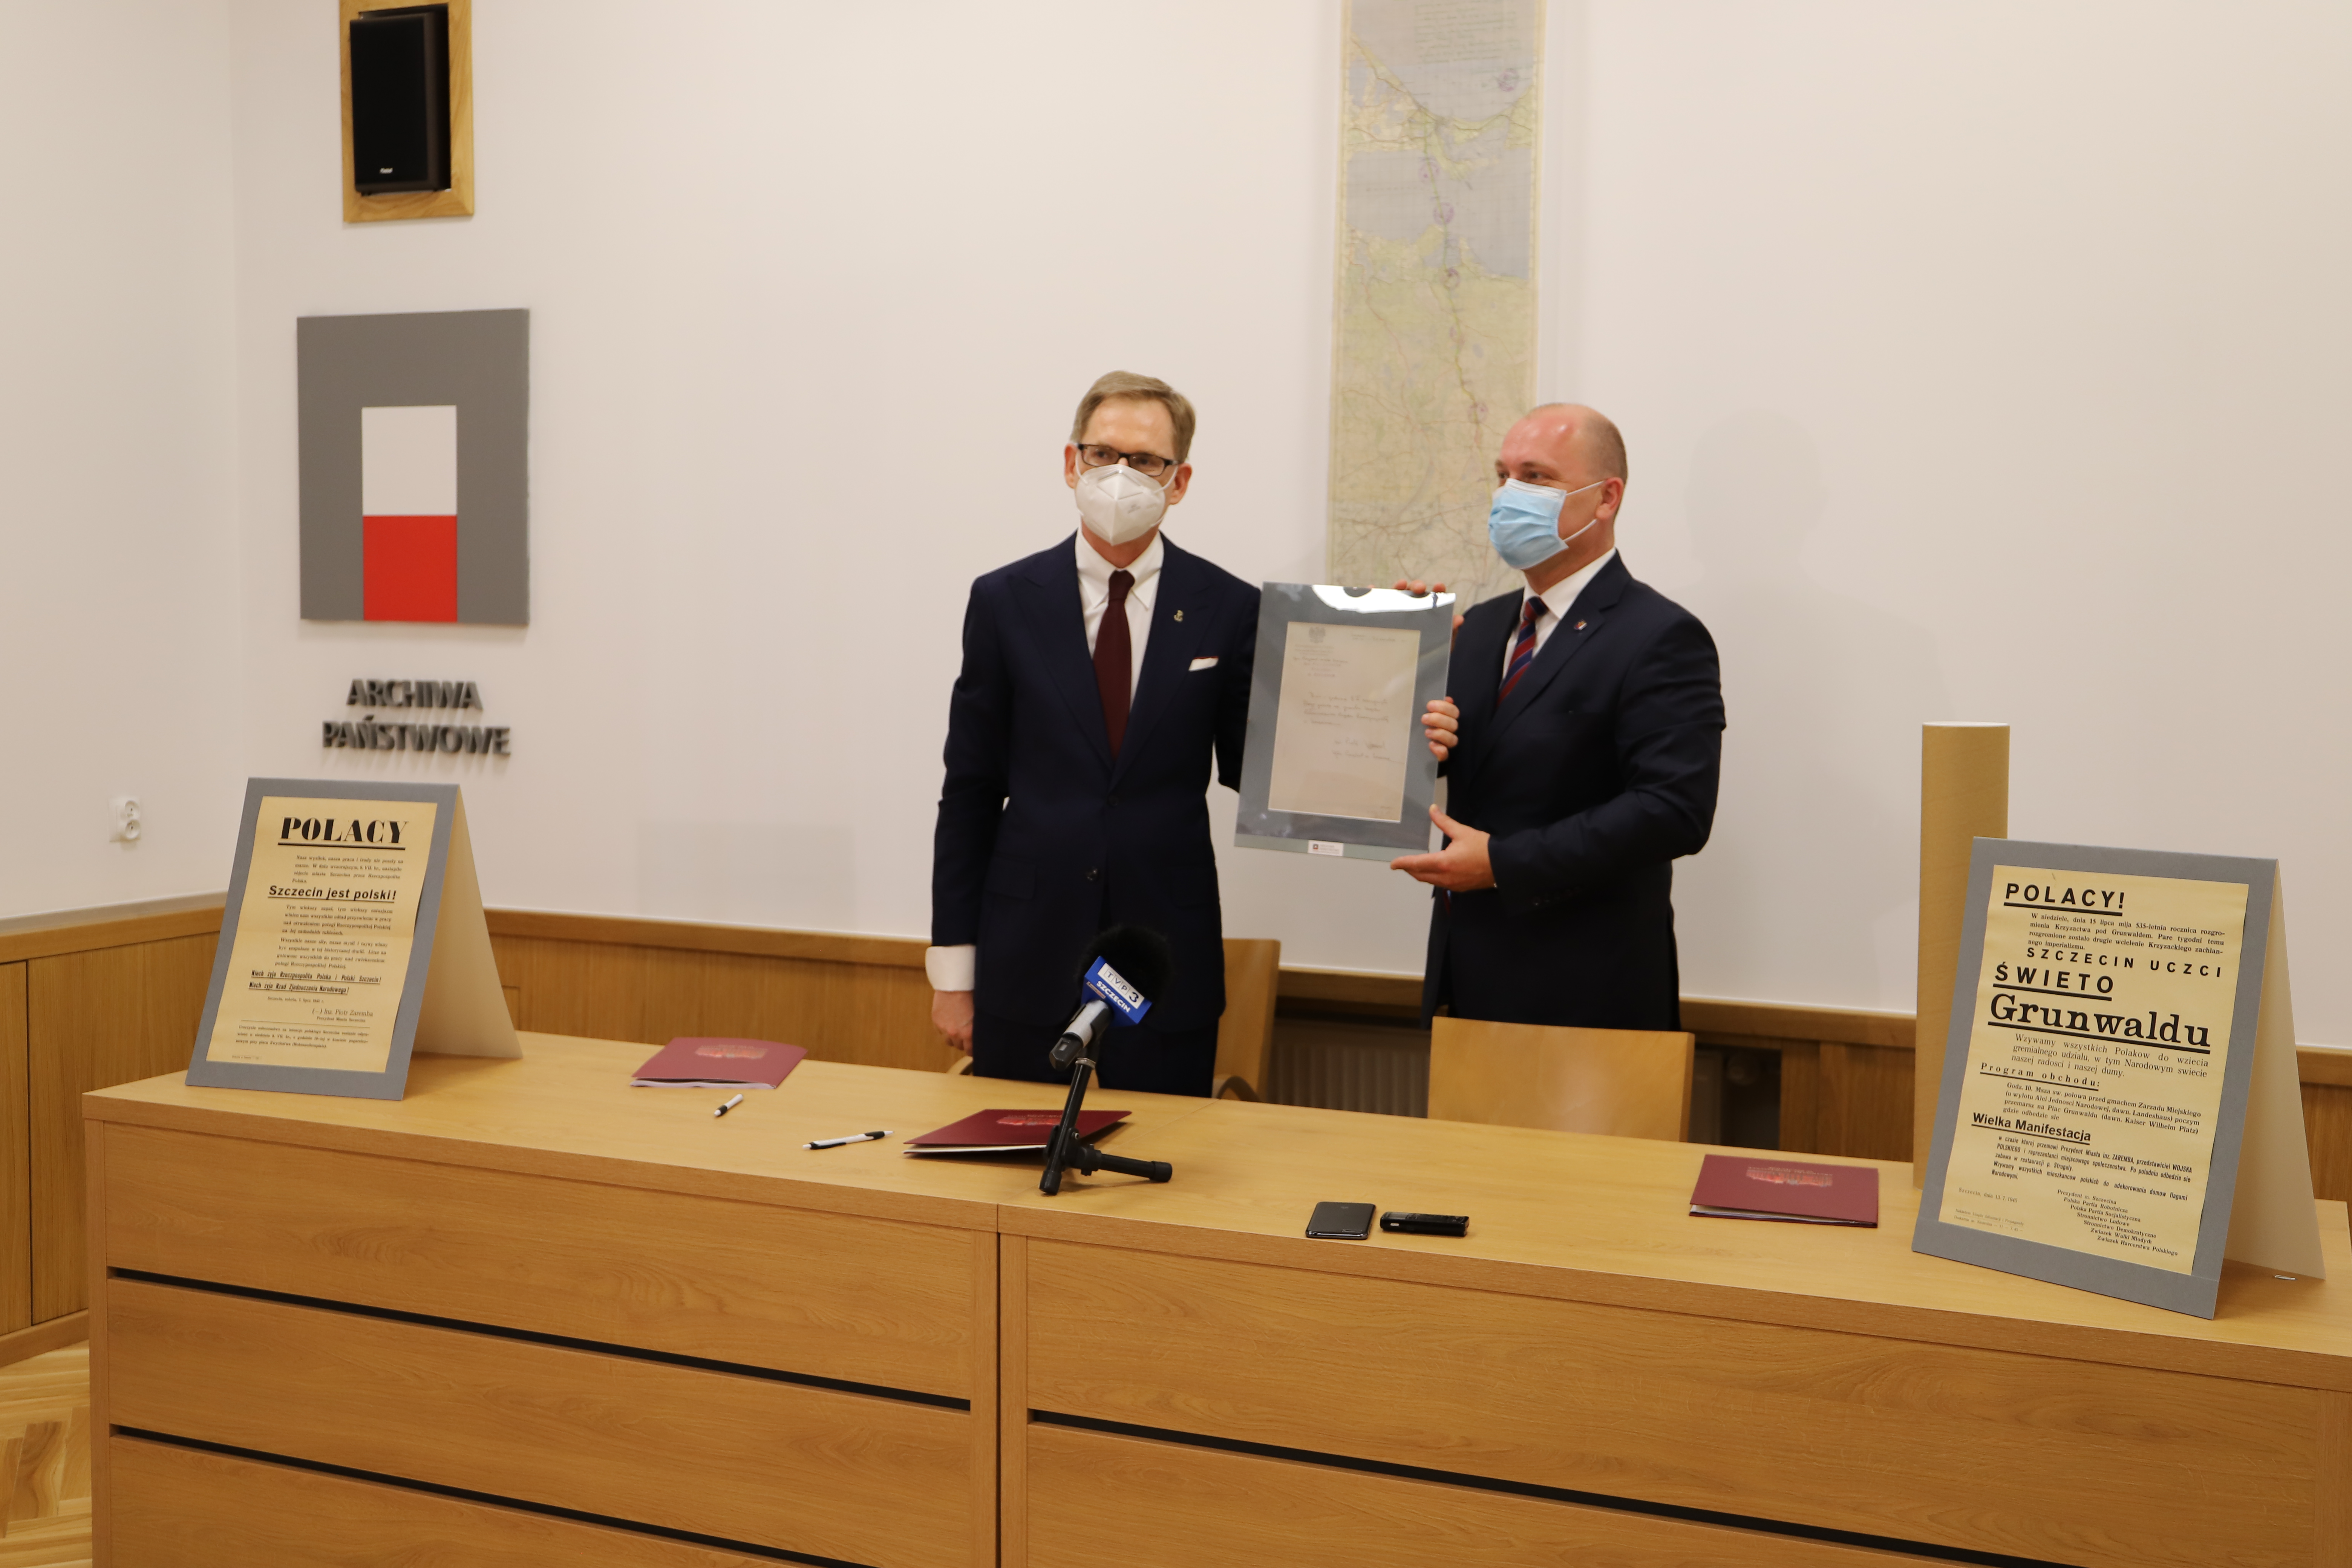 Prezydent Krystek i dyrektor Kowalczyk pozują z ramą z materiałem archiwalnym, w tle wisi mapa.